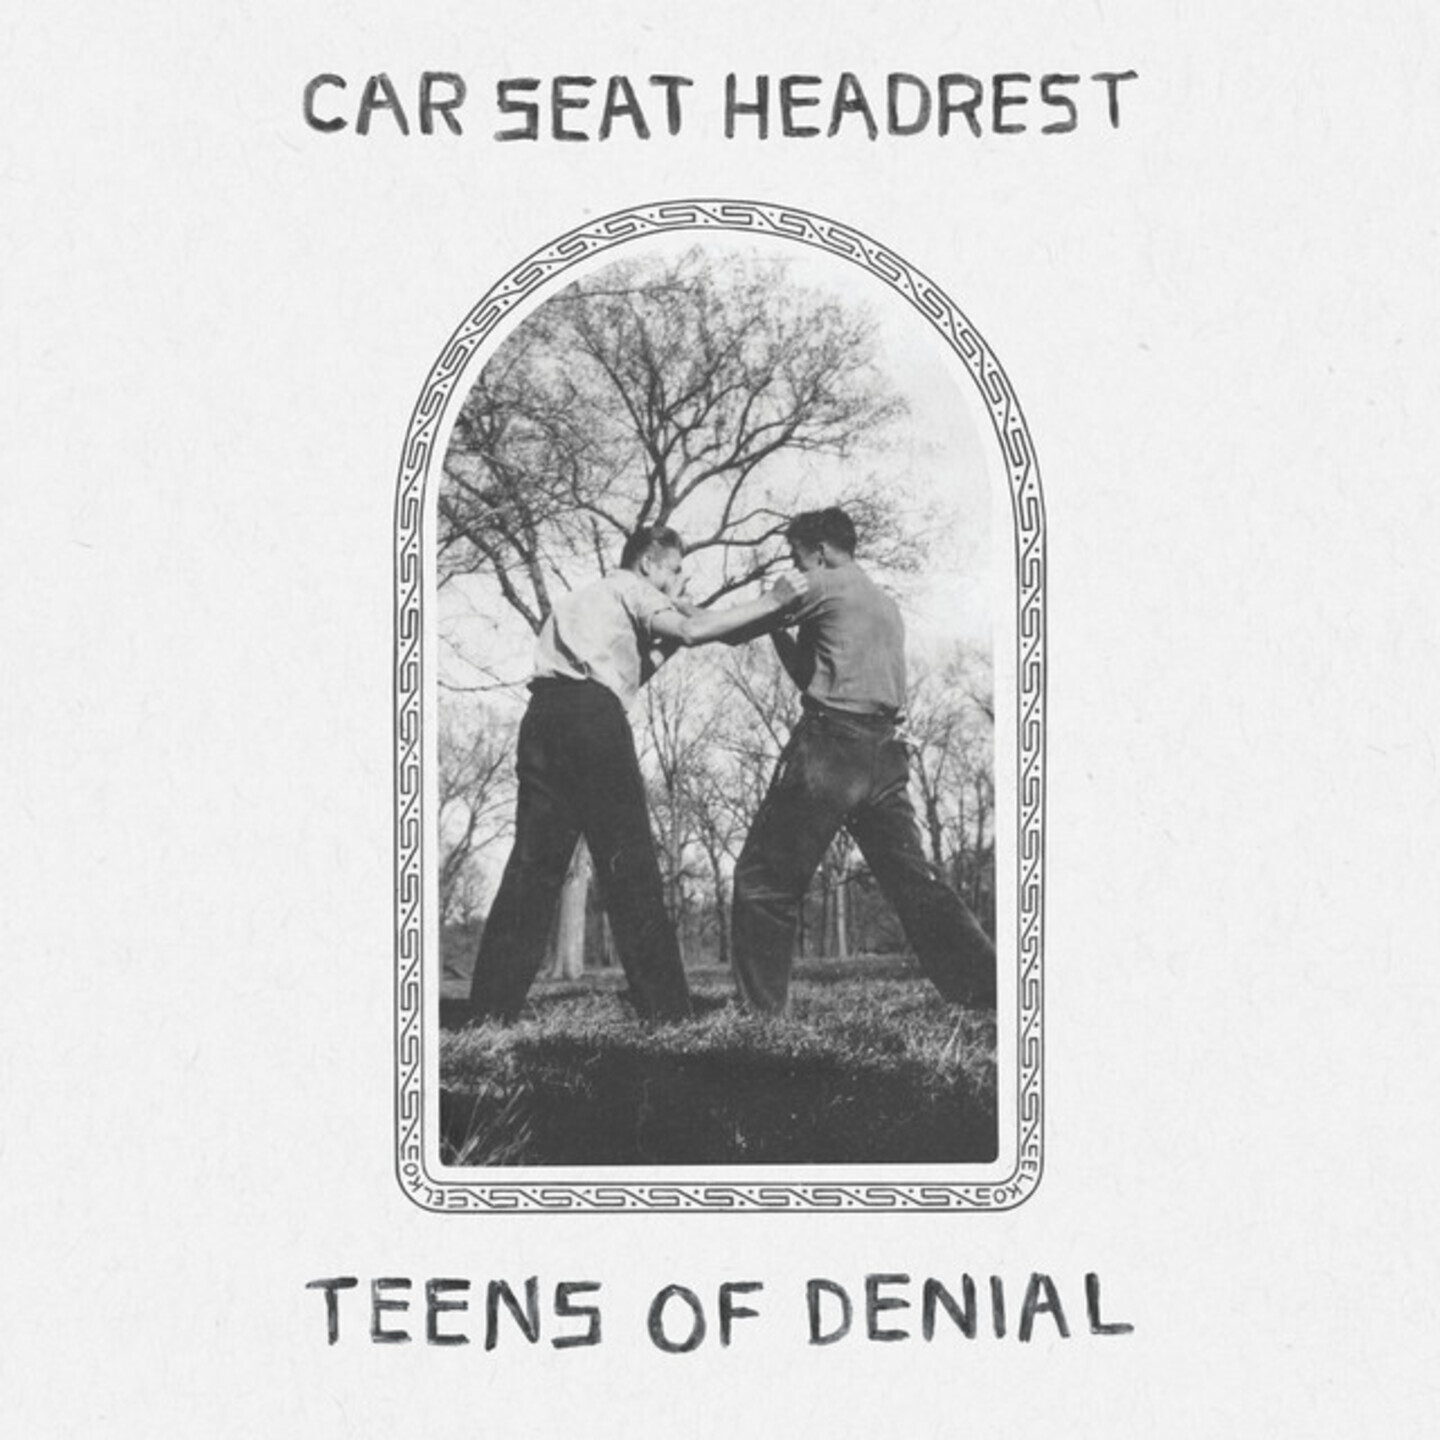 CAR SEAT HEADREST - Teens of Denial 2xLP